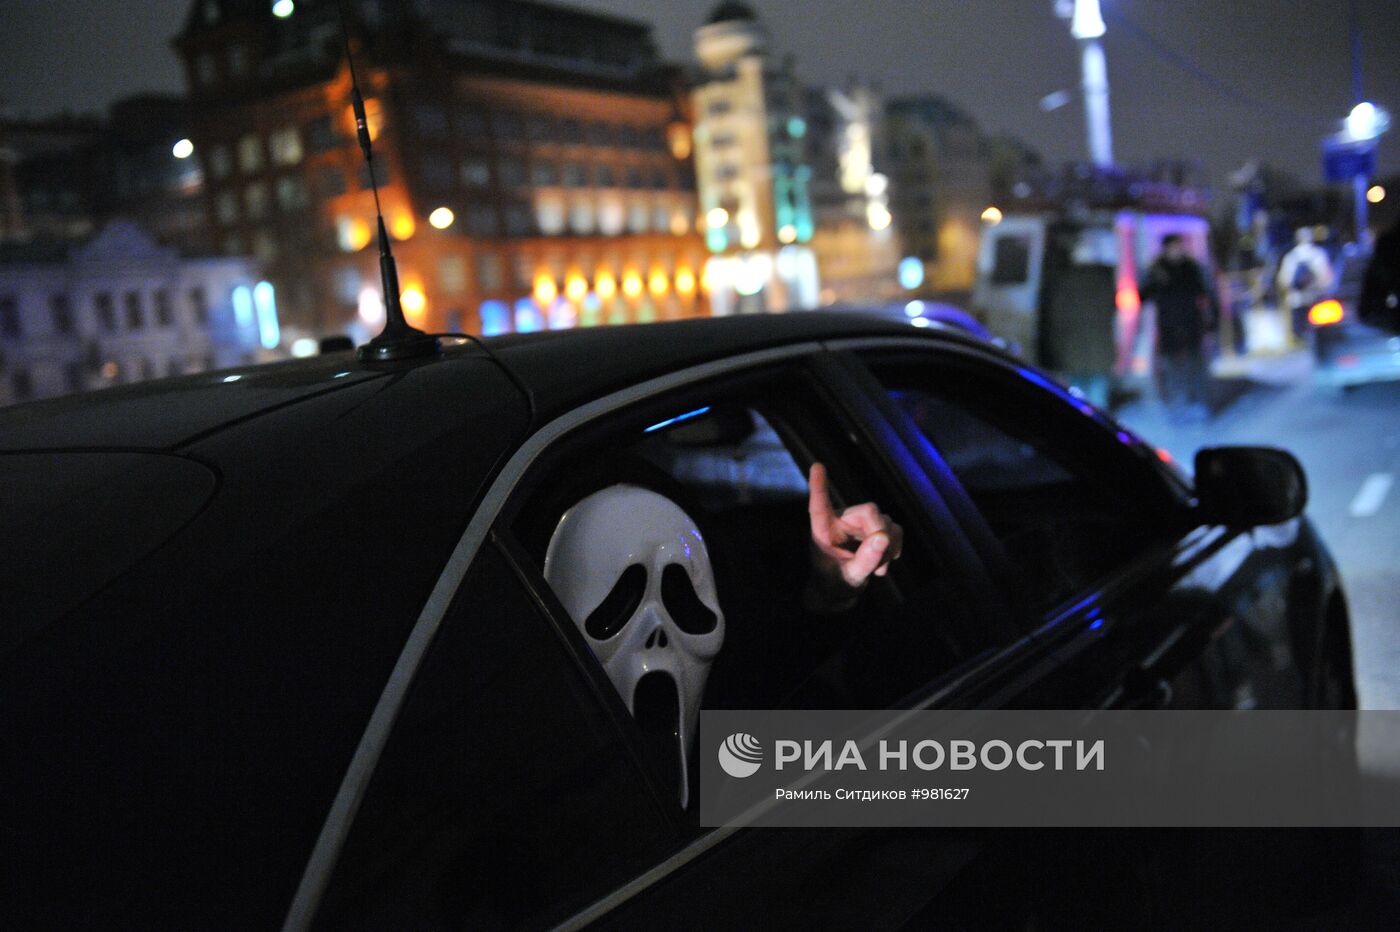 Празднование "Хэллоуина" в Москве